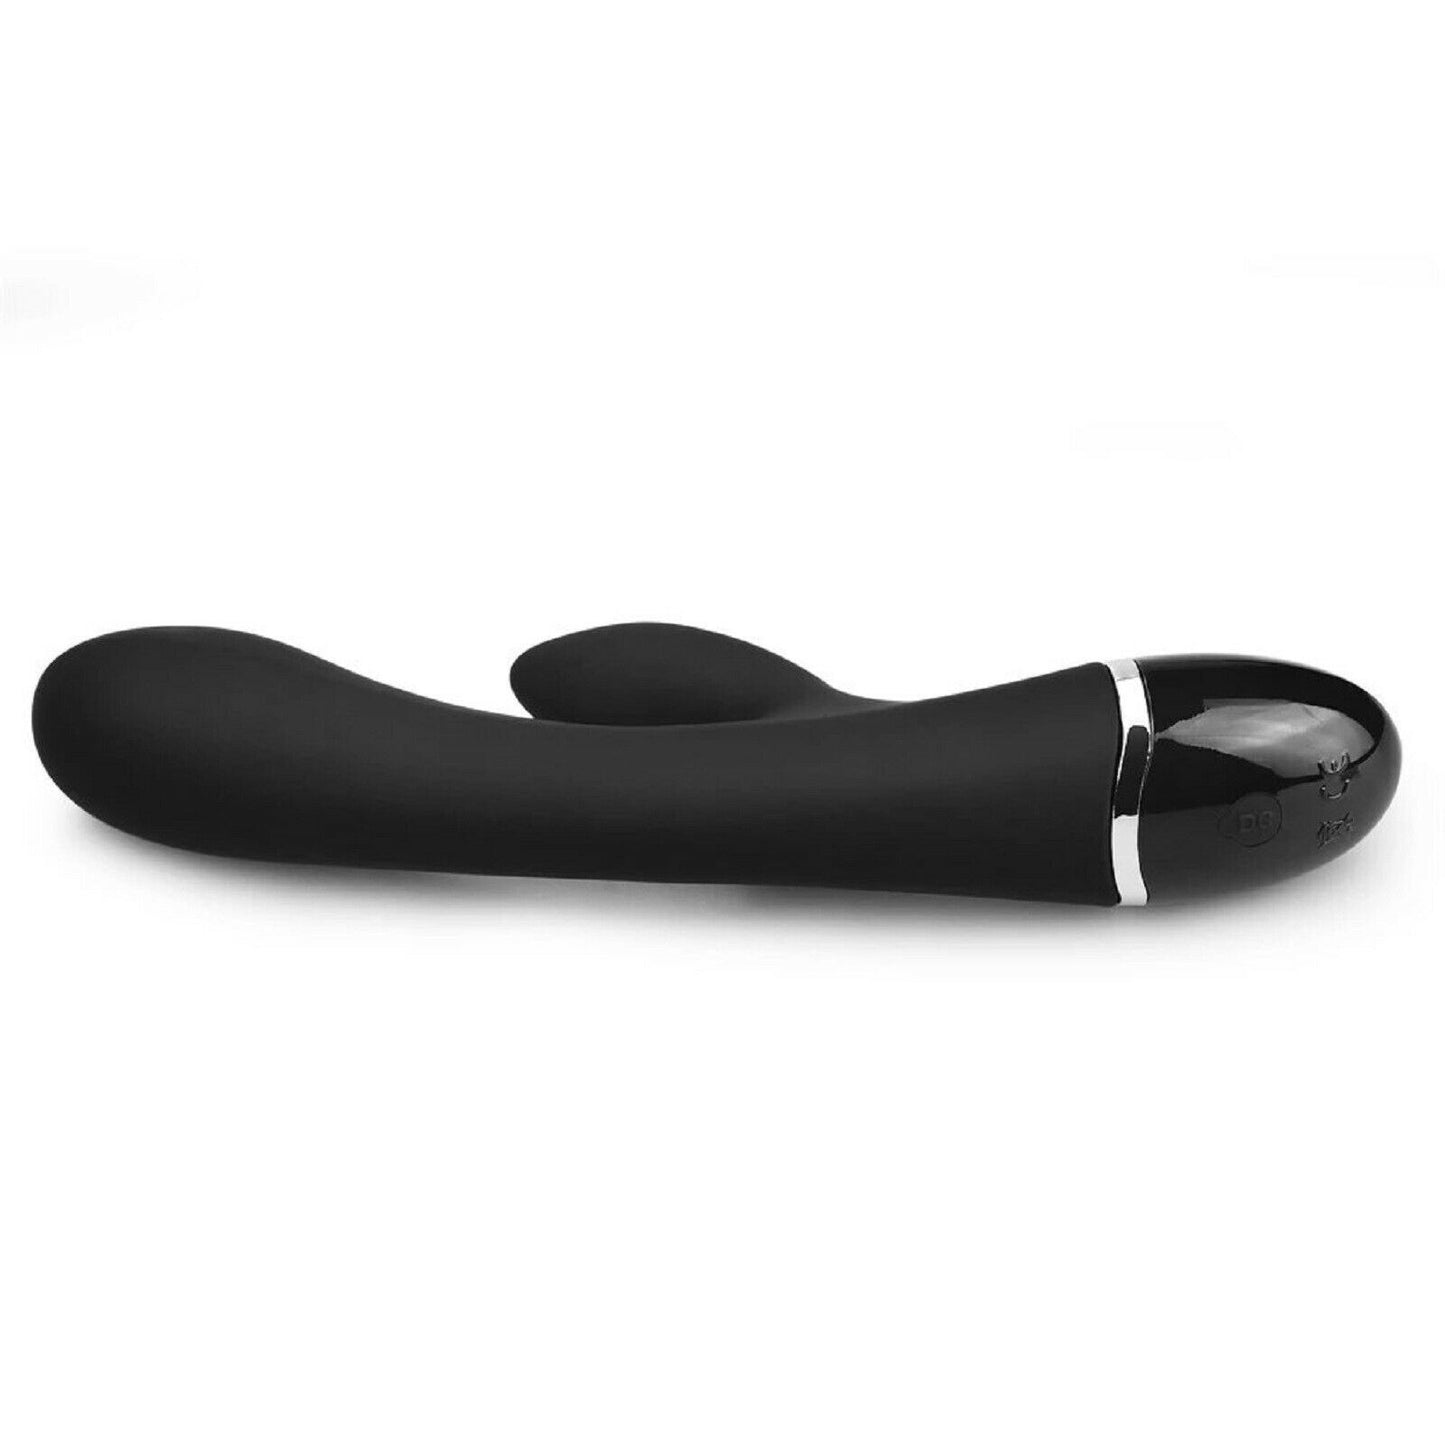 Rabbit Vibrator Gspot Dildo Wand Female Stimulator Massager Wand USB Sex Toy